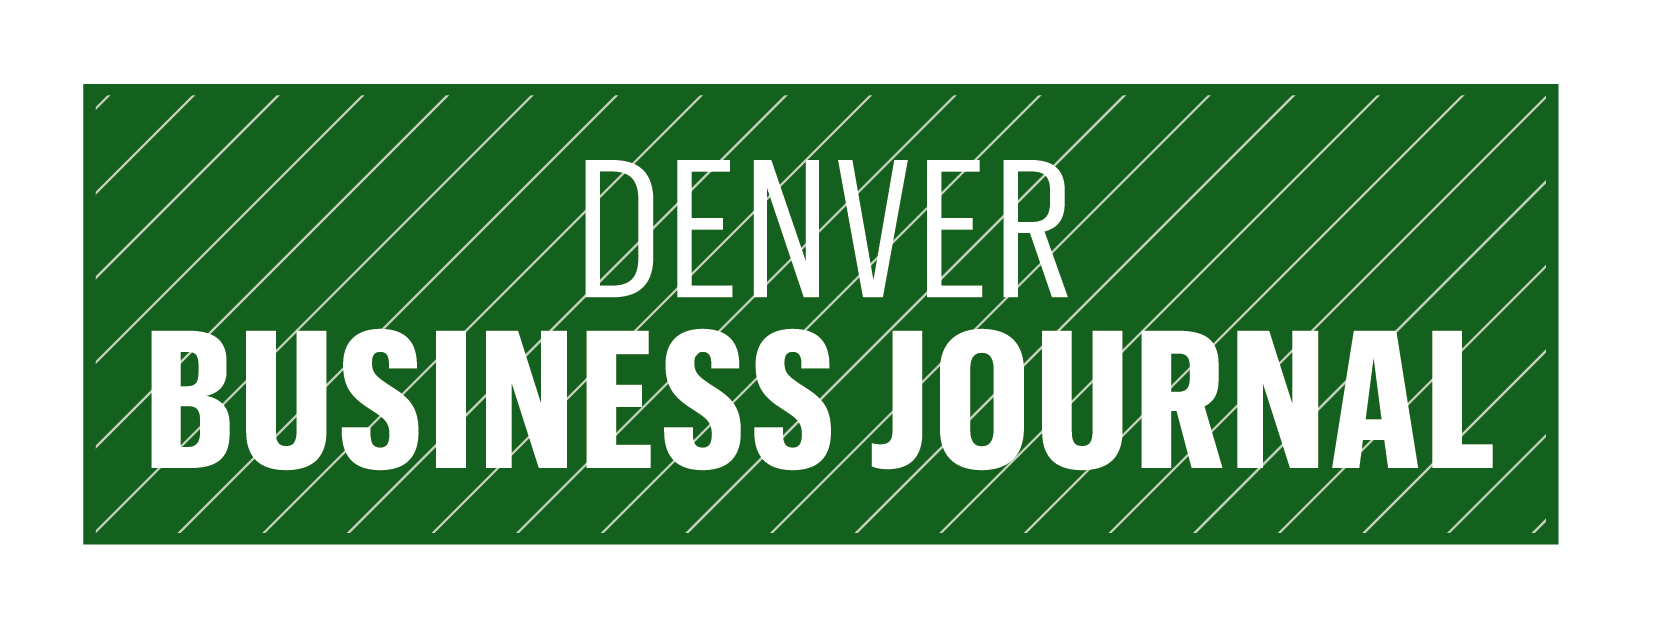 Denver Crane Watch - Denver Business Journal